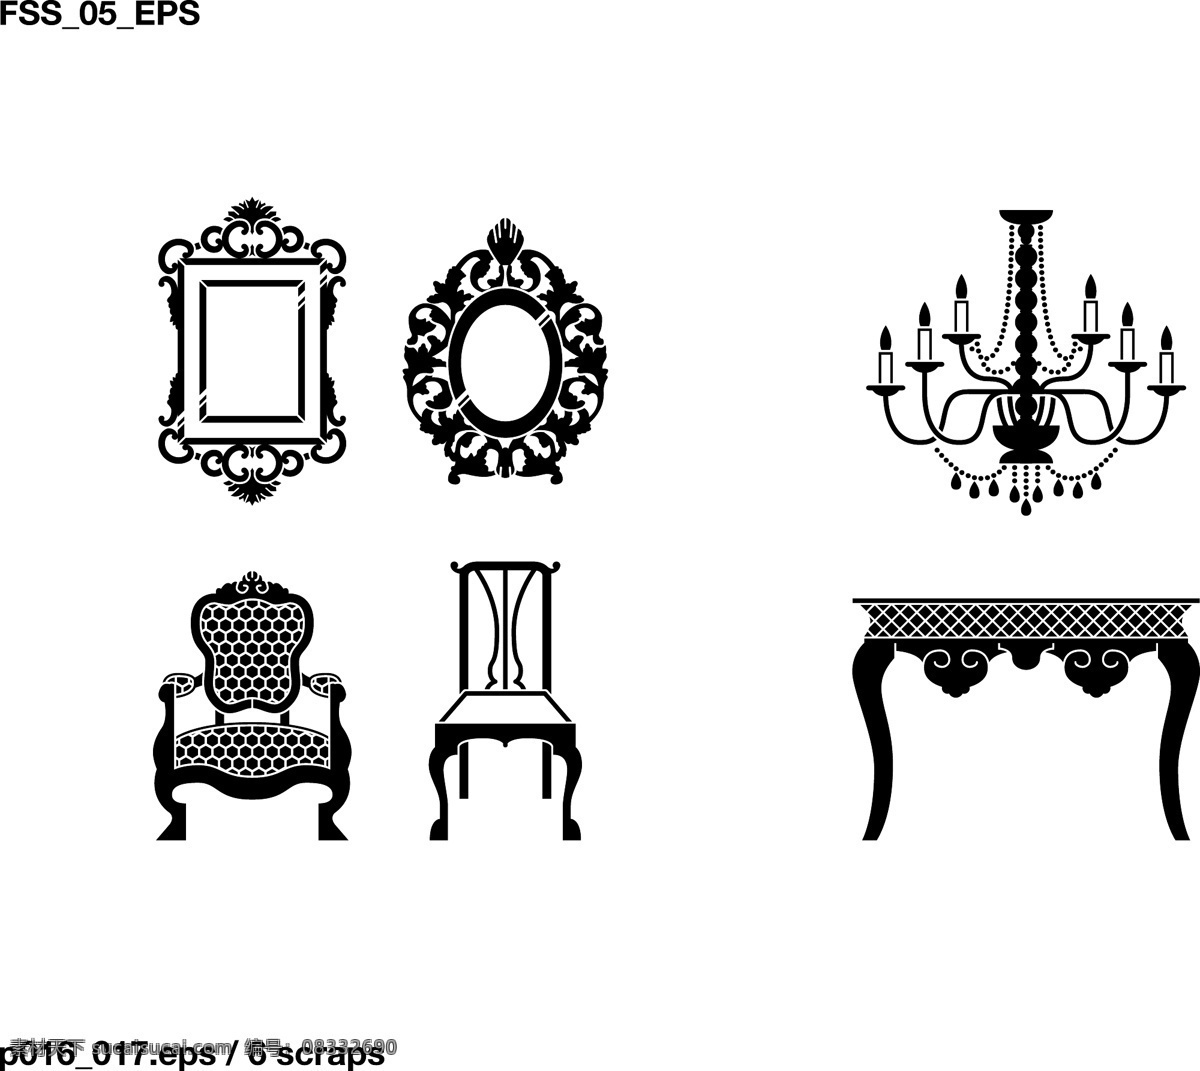 欧式 家具 图标 吊灯 欧式椅子 欧式桌子 生活图标 梳妆台 矢量图 日常生活